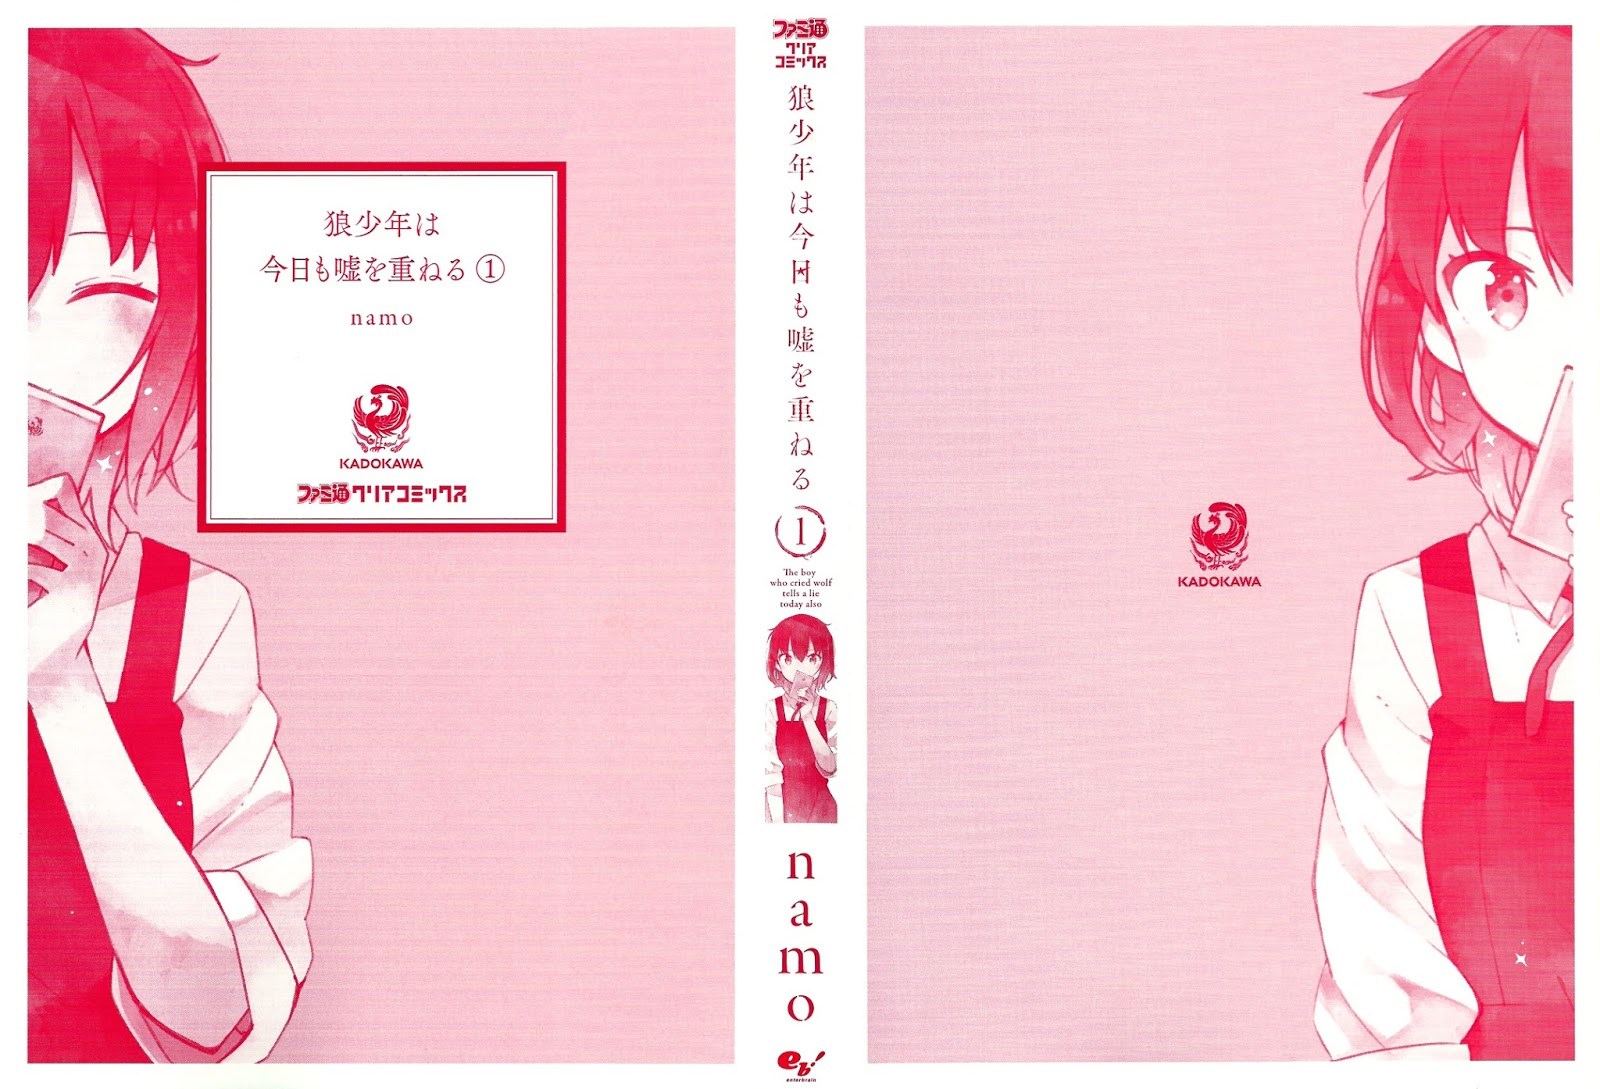 Ookami Shounen wa Kyou mo Uso o Kasaneru Chapter 01